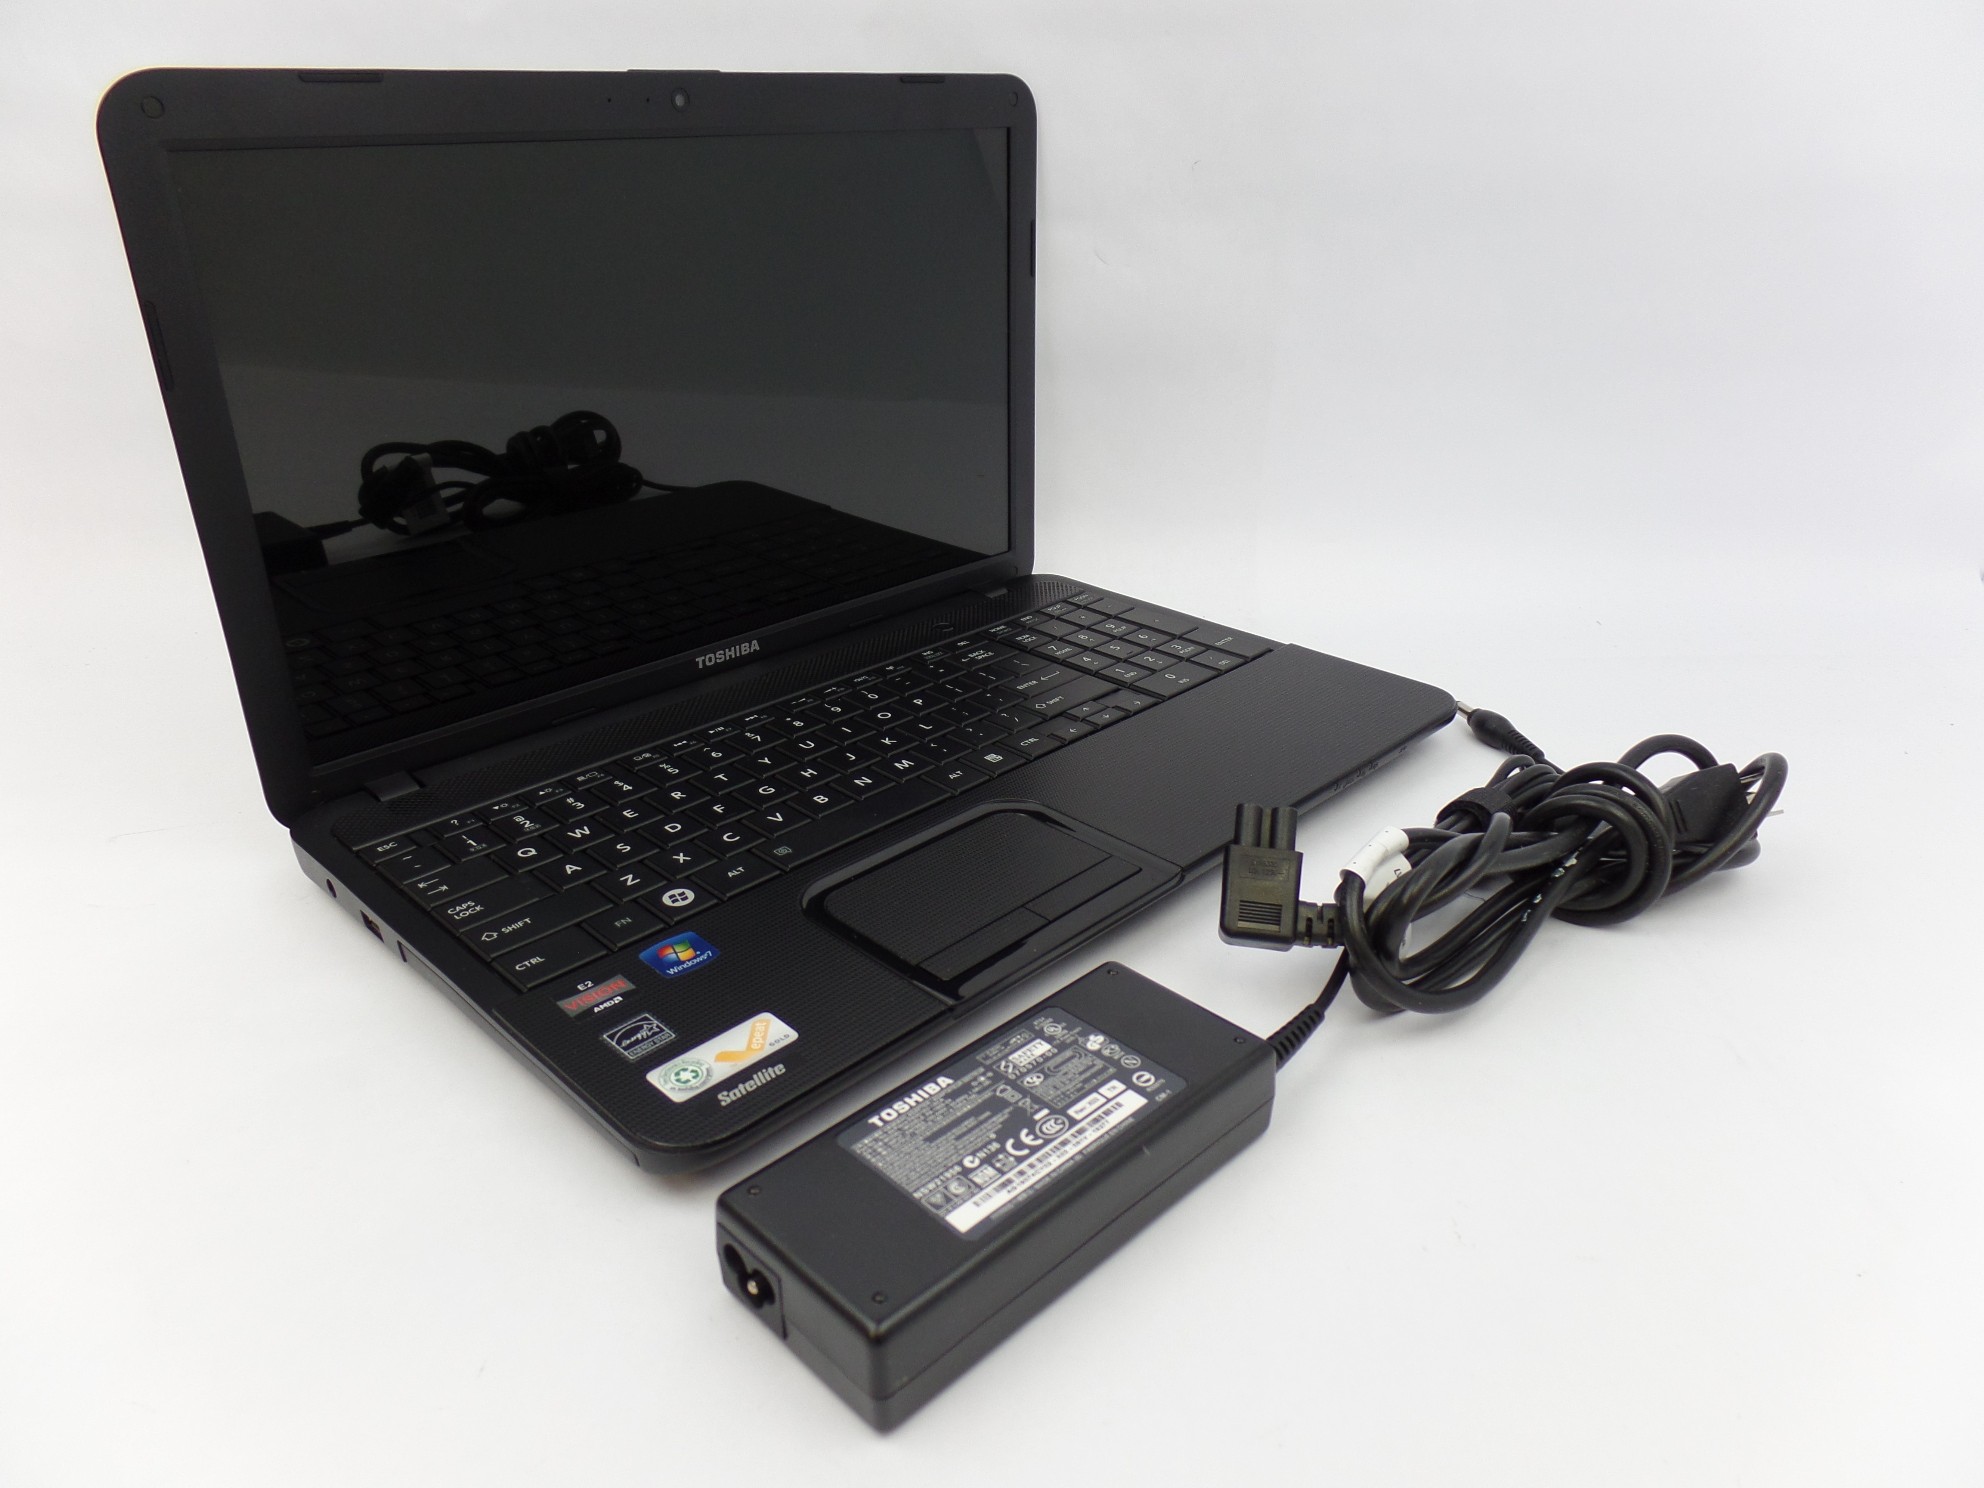 Toshiba Satellite S855D-S5205 15.6" HD AMD E-450 1.65GHz 4GB 320GB W10P Laptop U